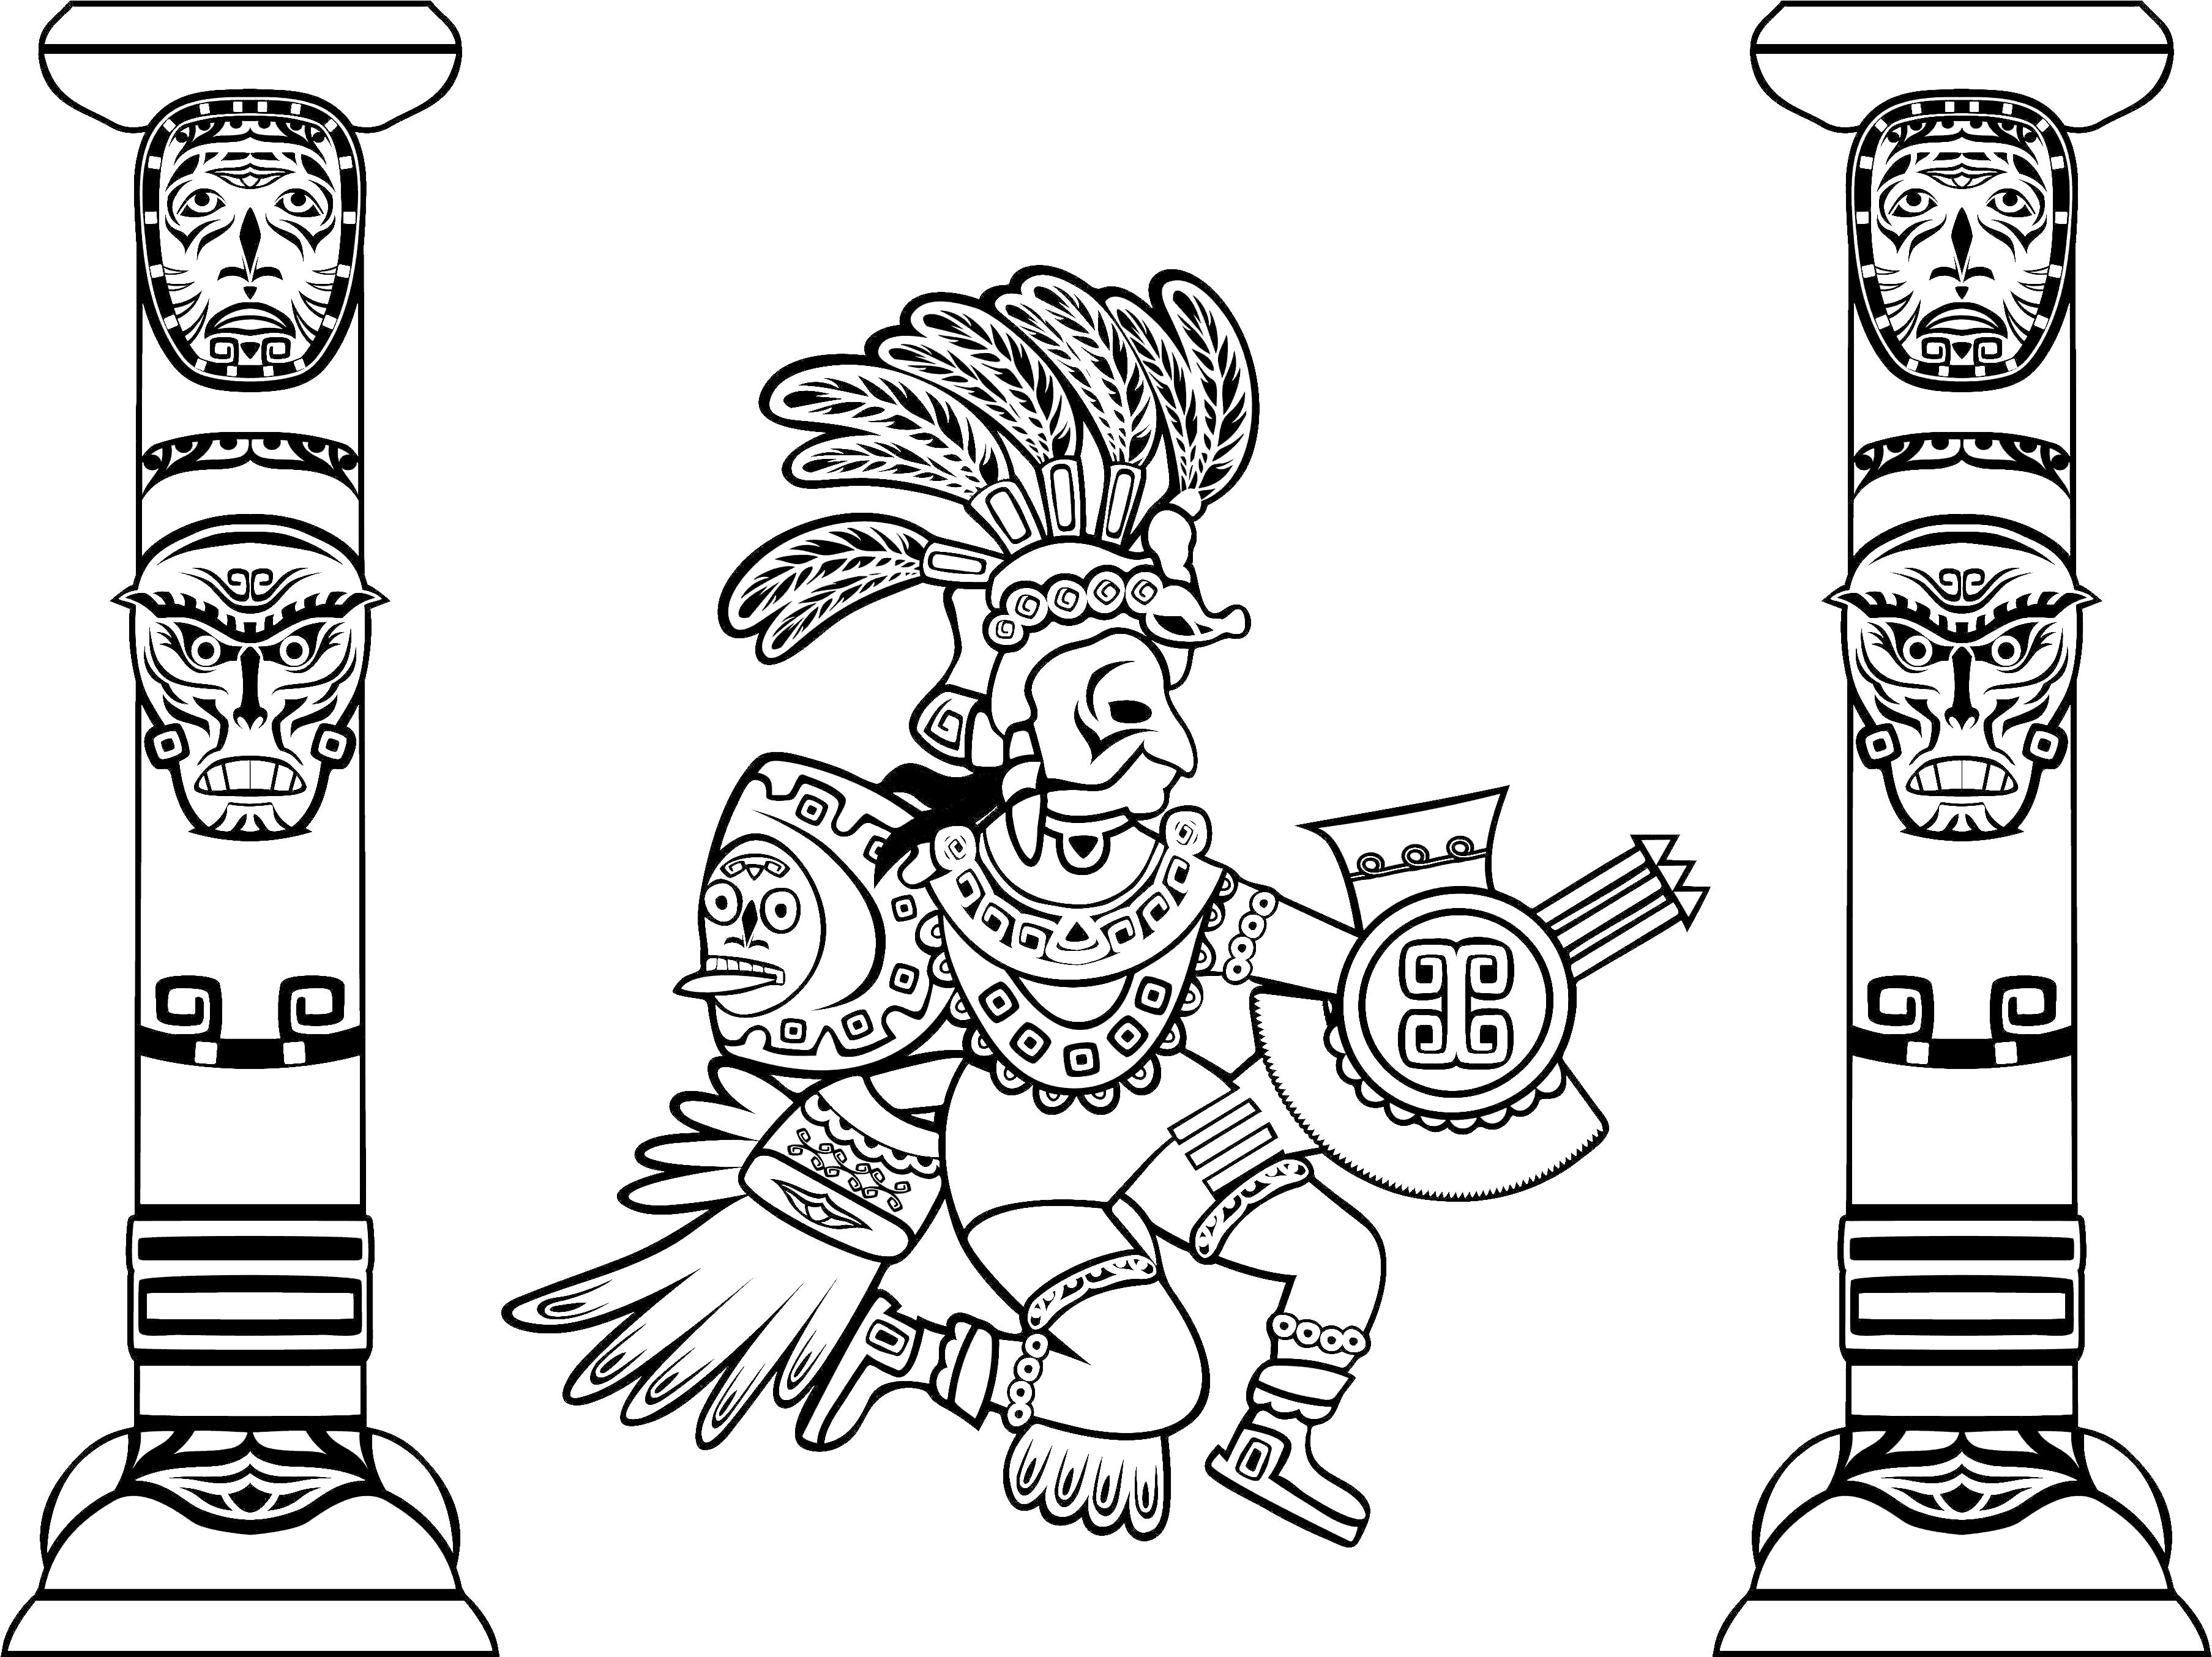 Disegni da colorare per adulti : Maya, Aztechi e Incas - 5, Artista : tina0702   Fonte : 123rf